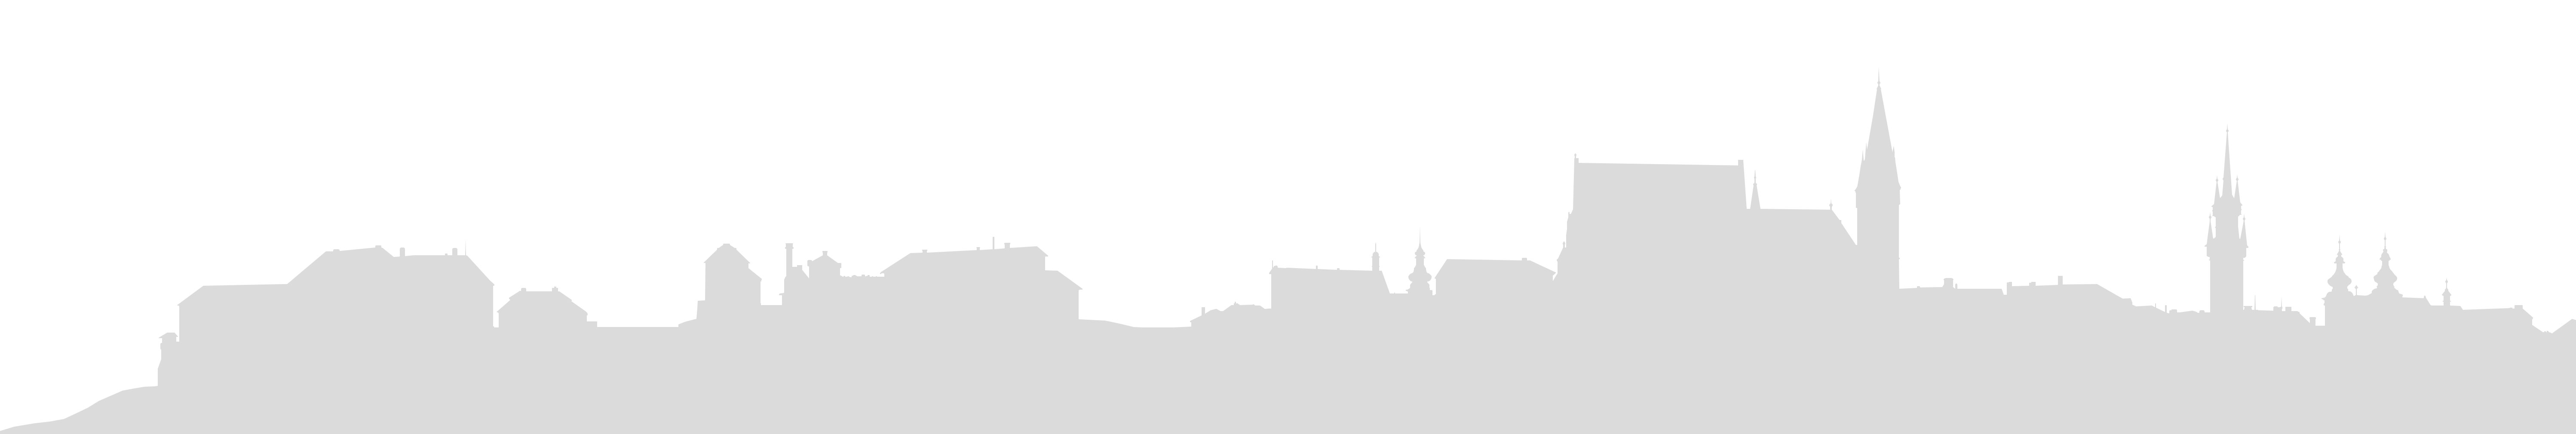 Znojmo - silueta města